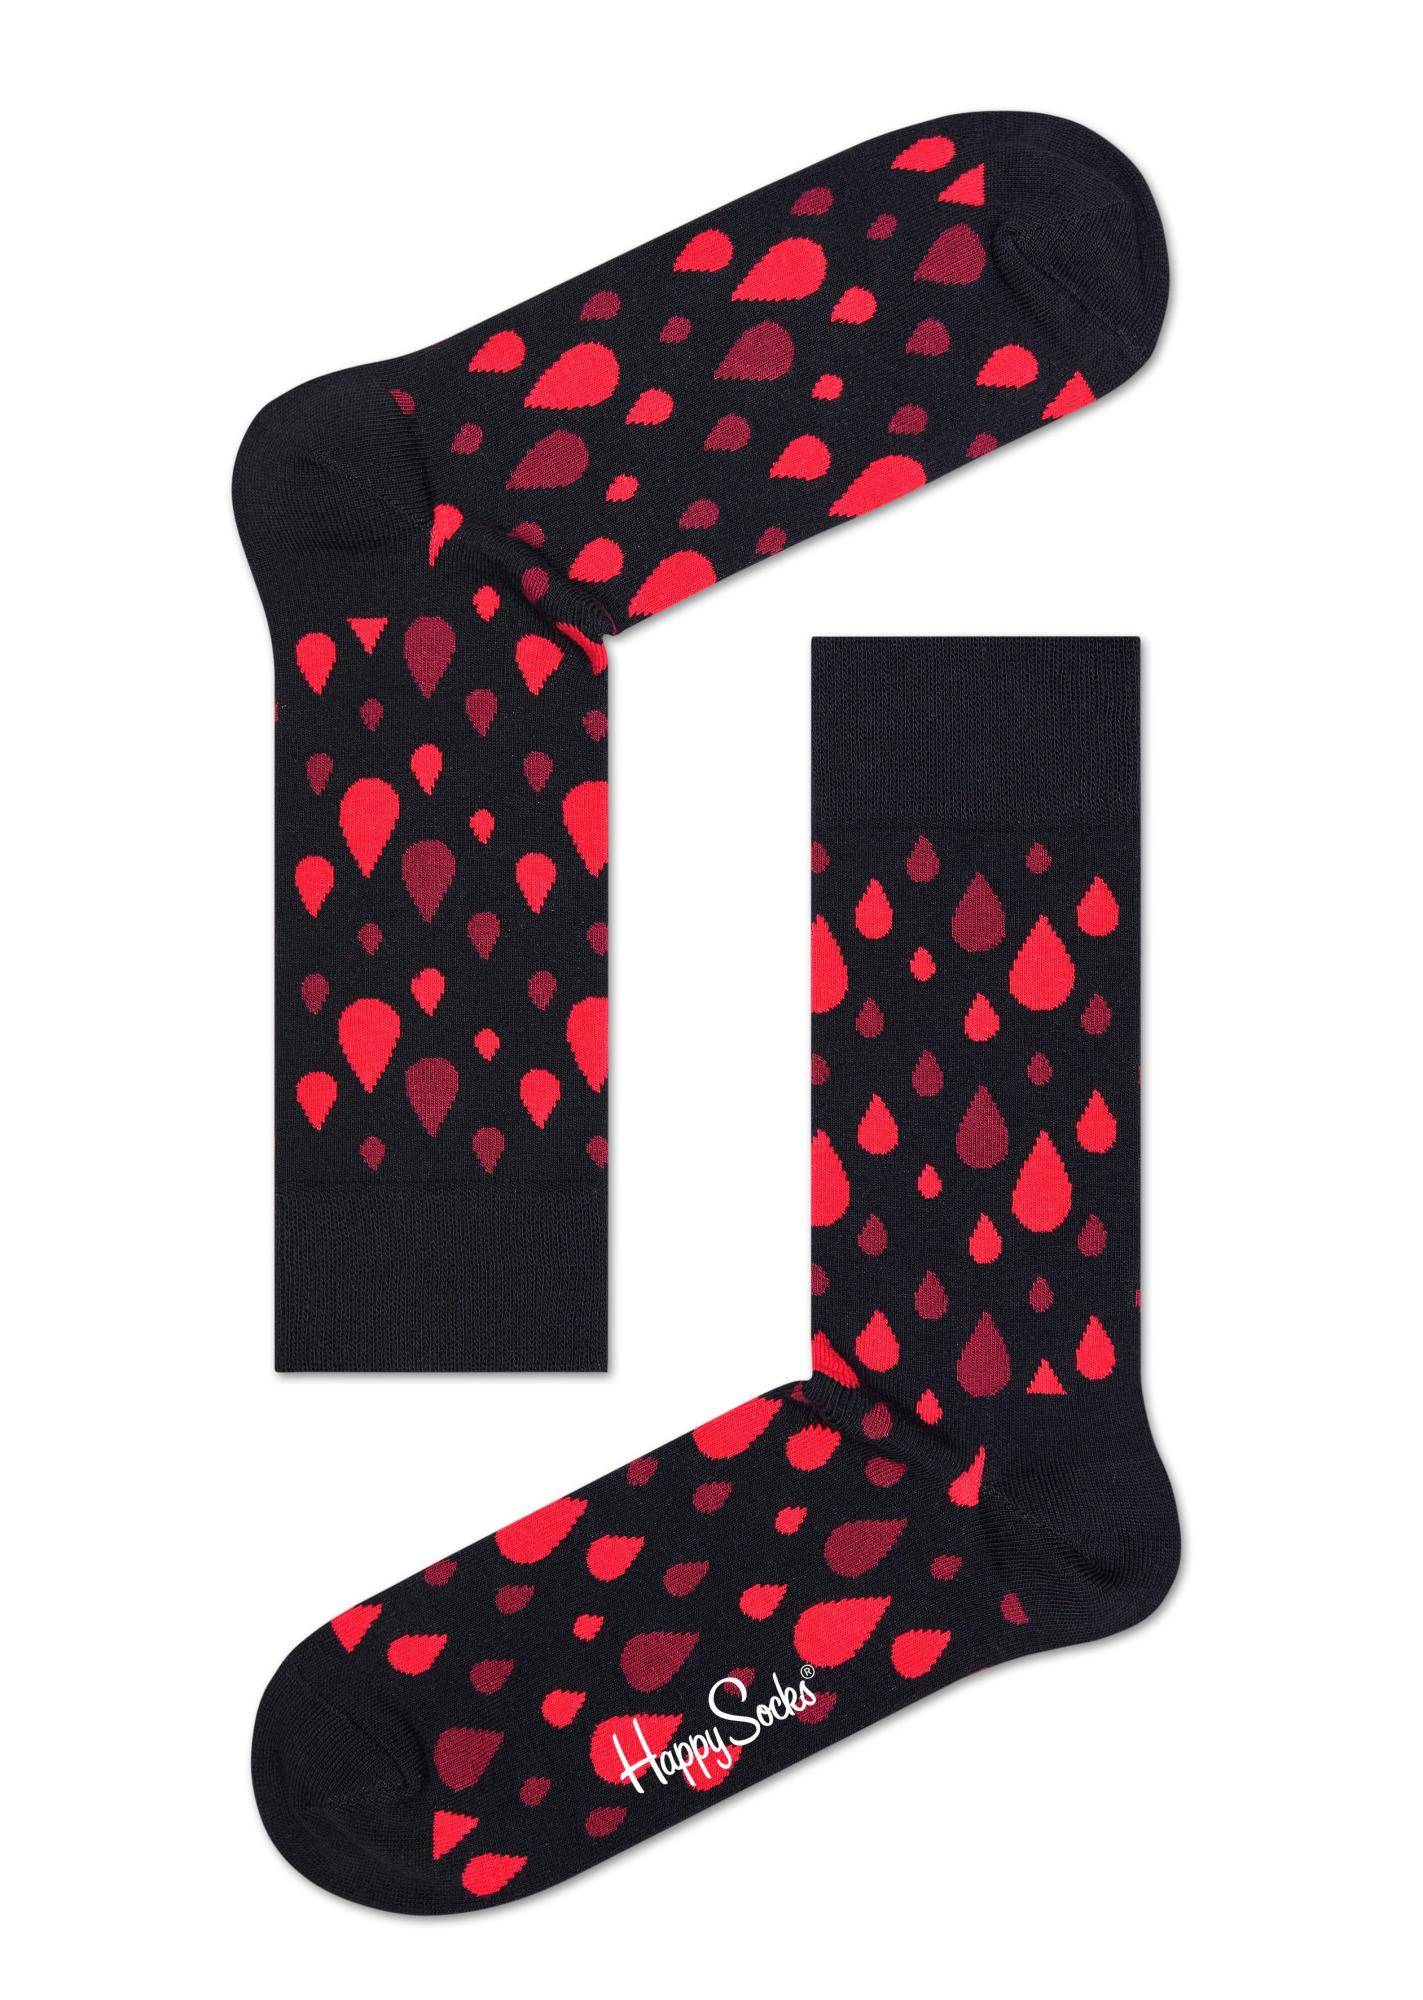 Носки Happy socks Robert Rodriguez Sock RRDB01 9000, размер 29 - фото 1